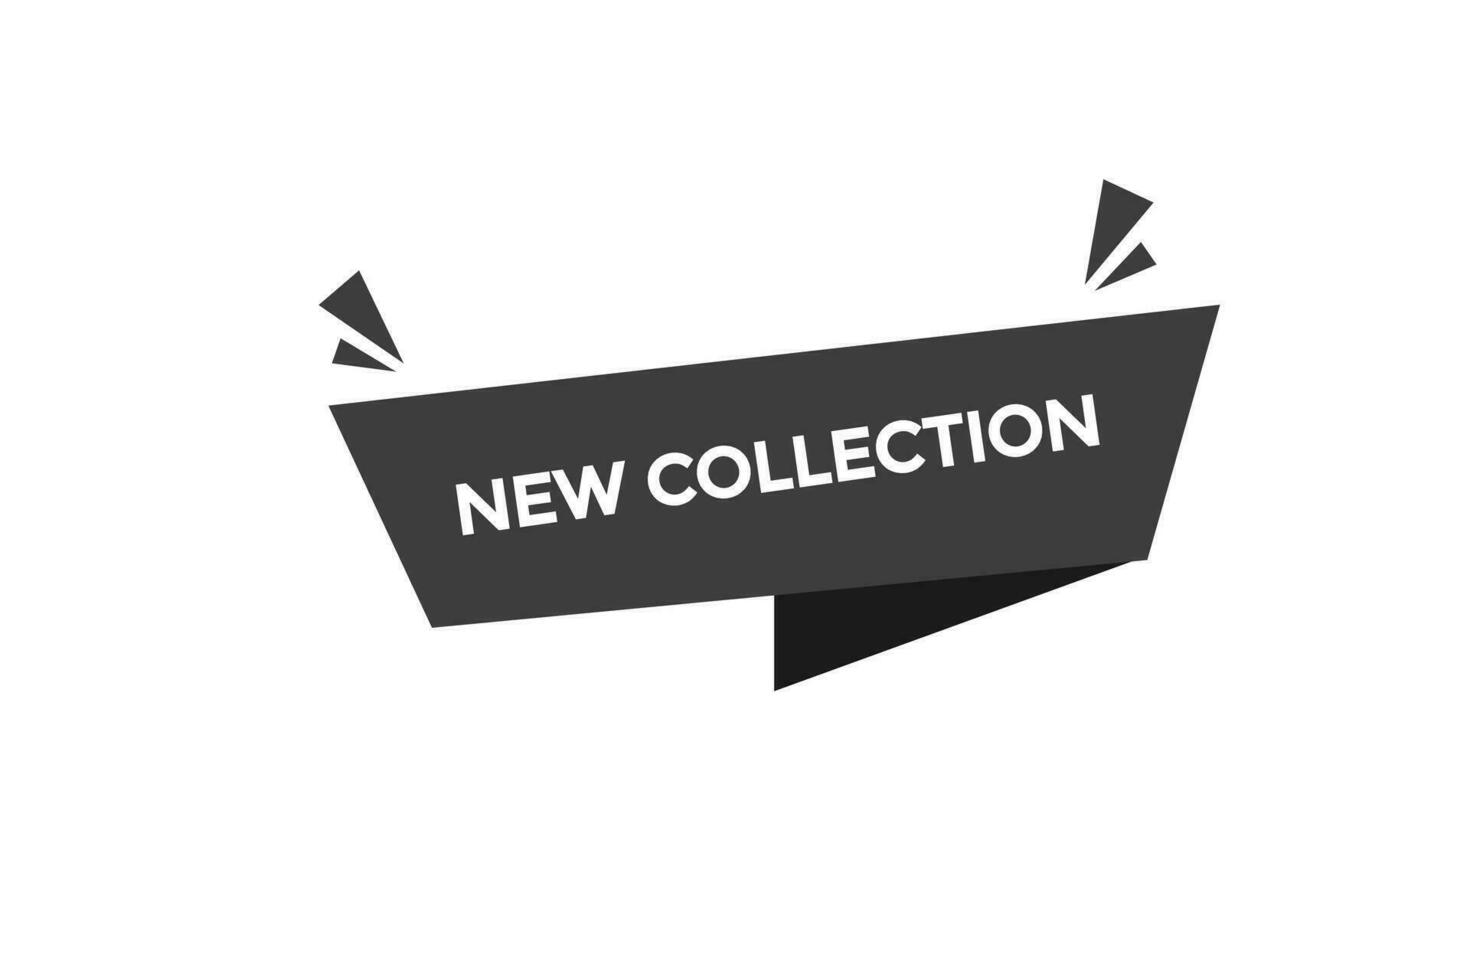 nuovo nuovo collezione, livello, cartello, discorso, bolla striscione, vettore